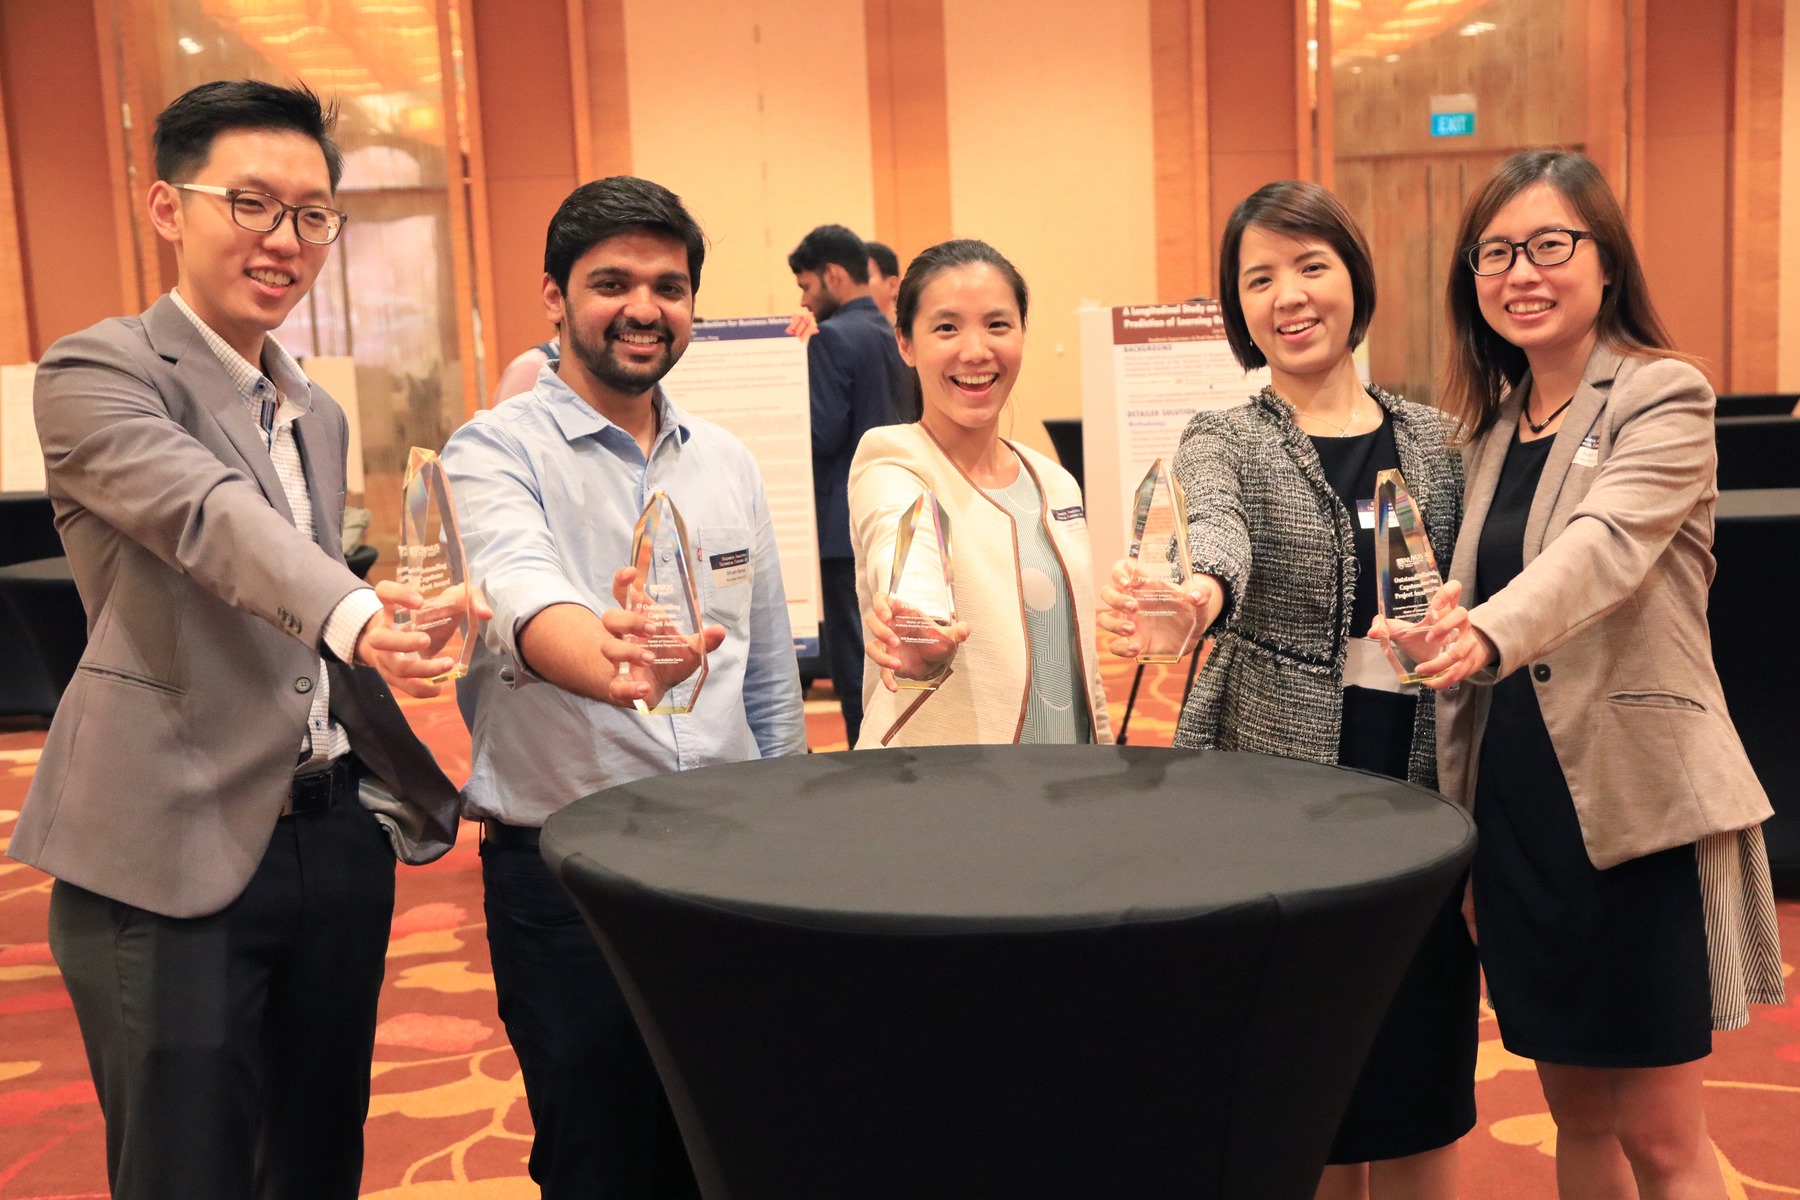 Winners of Outstanding Capstone Project Award (Left to Right) Xiao Weizhang Bertrand, Shivam Bansal, Wu Dani, Pham Huong Giang, Yi Suqin.